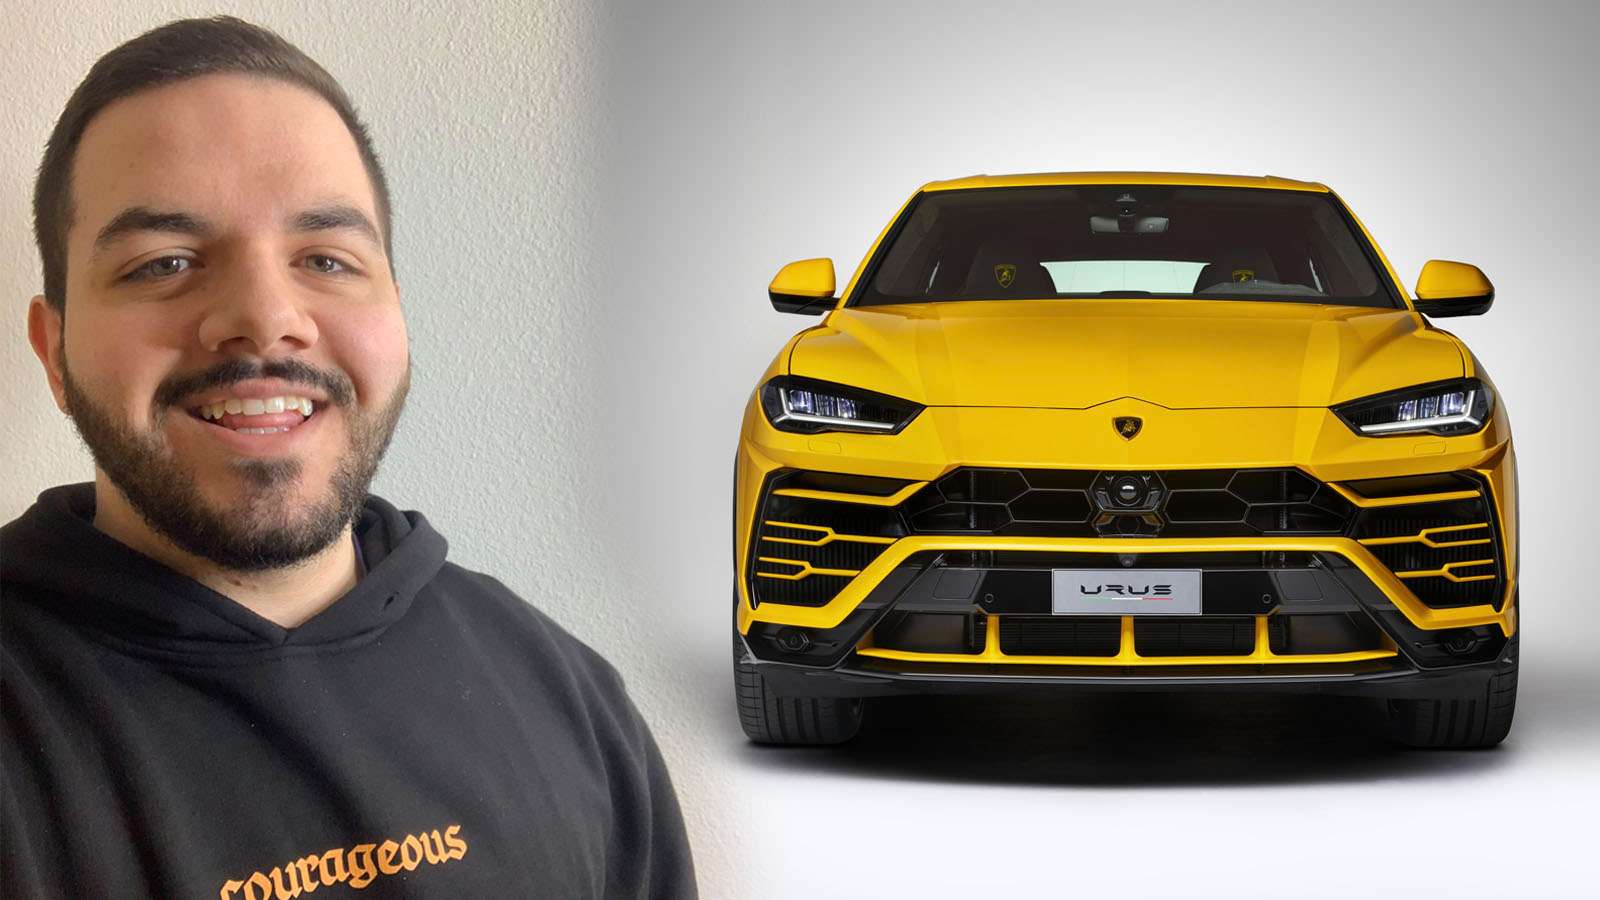 CouRage buys Lamborghini Urus